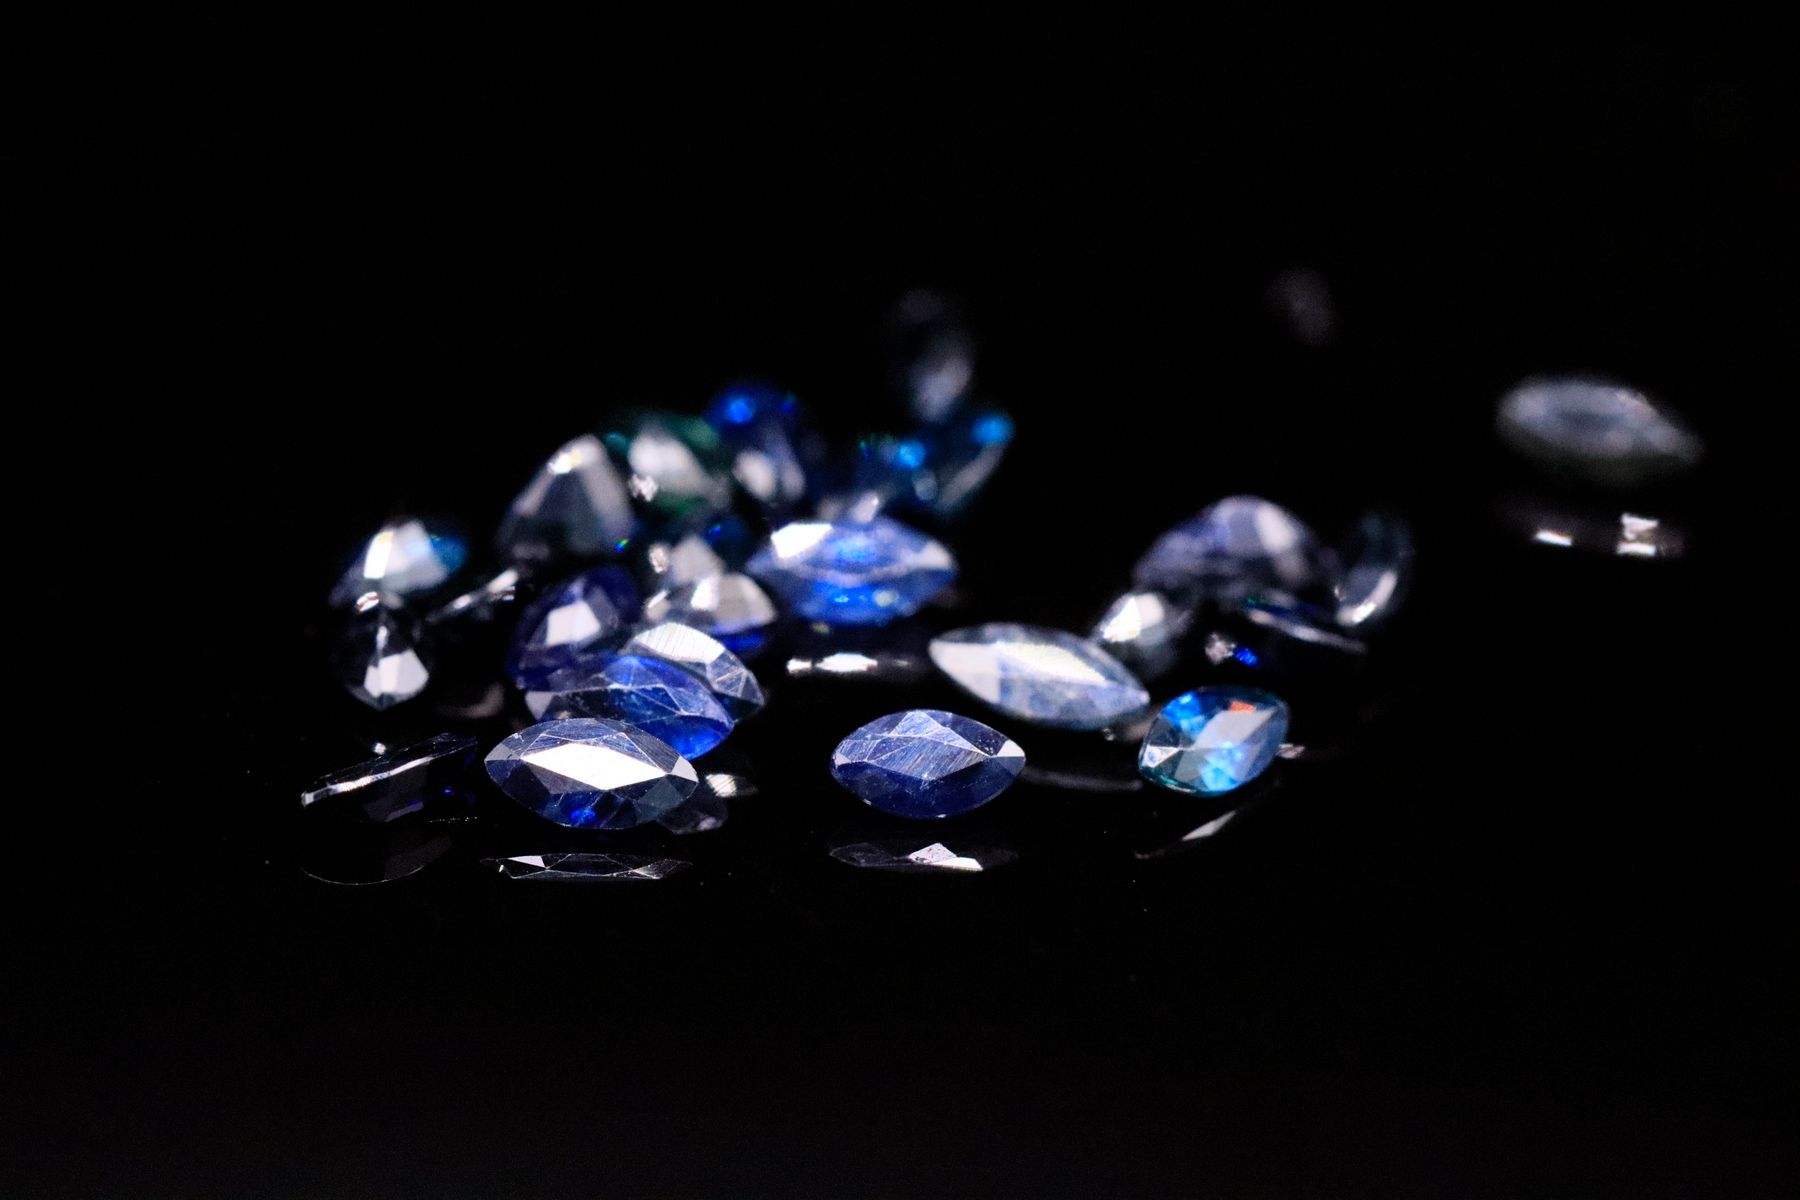 Null 纸质二十五颗榄尖形蓝色蓝宝石。
重量：5.16 克拉

平均尺寸：5 毫米 x 3 毫米